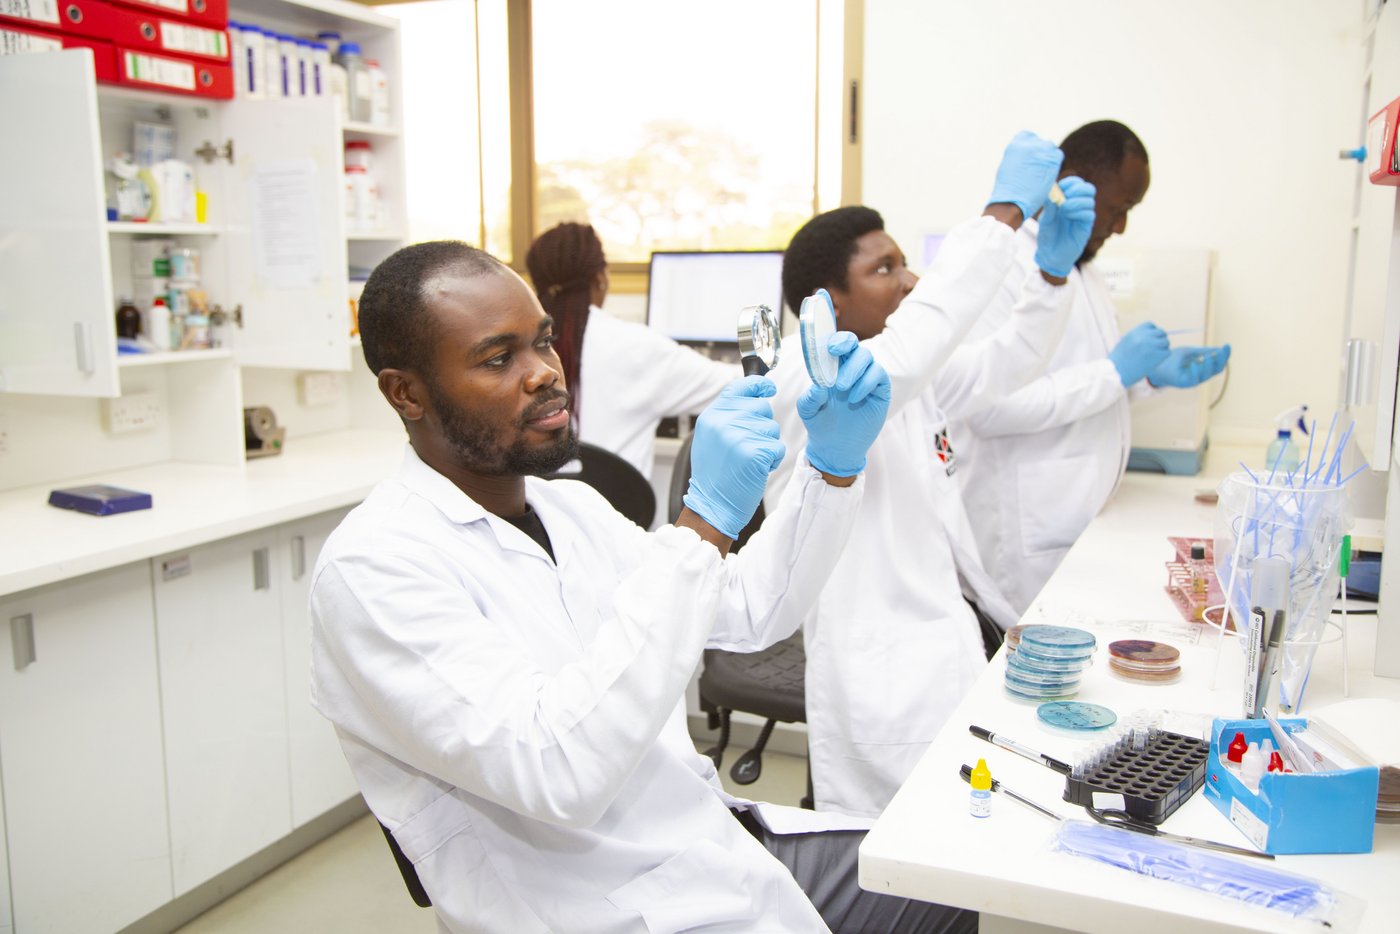 Das Bild zeigt drei afrikanische Forscher und eine afrikanische Forscherin in weißen Kitteln und hellblauen Handschuhen im Labor arbeiten.